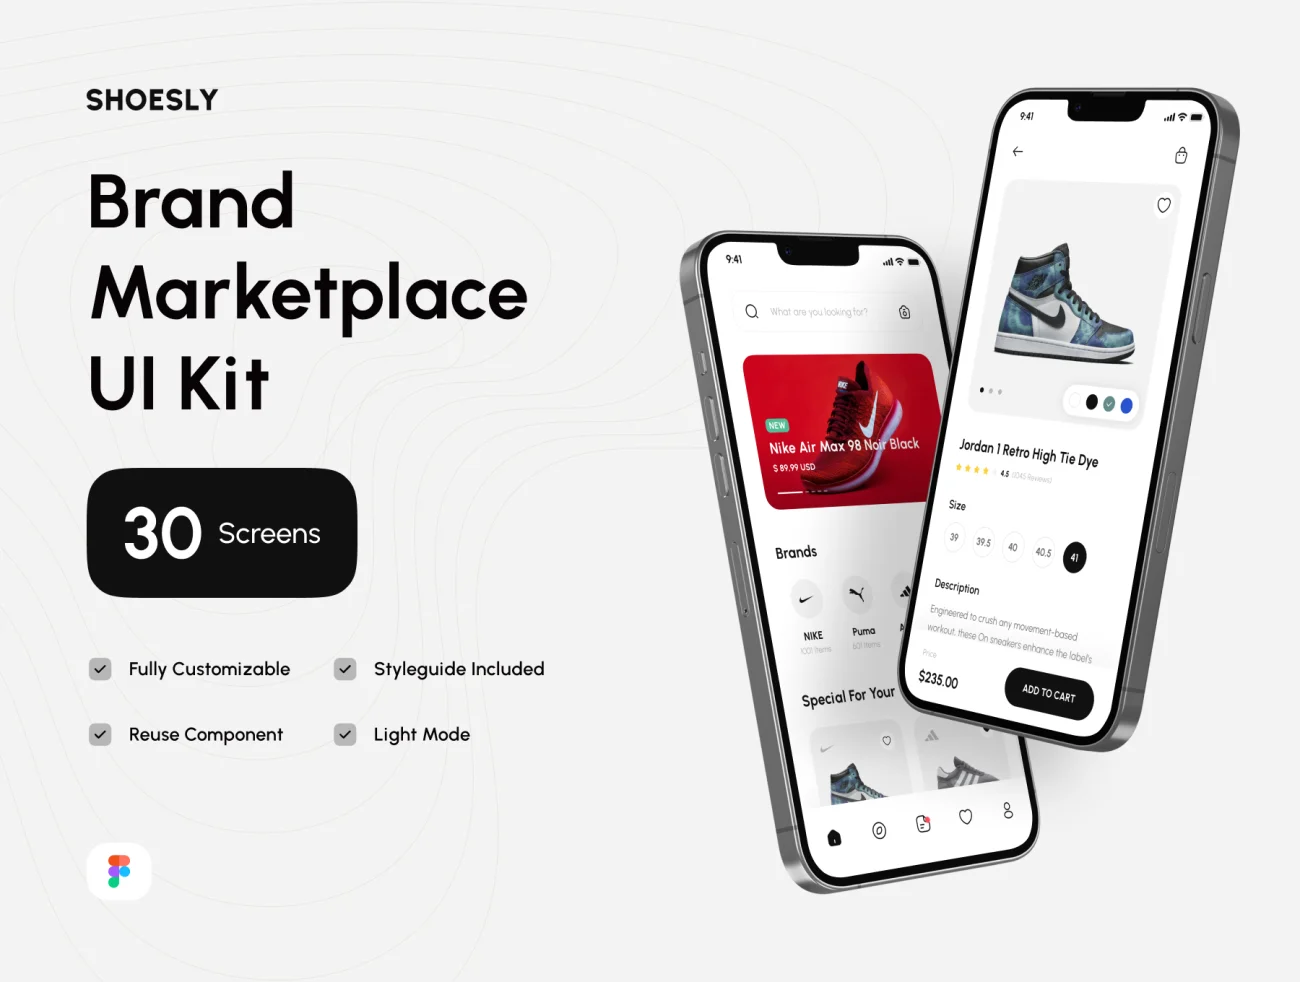 30屏时尚潮流鞋履电商网购平台UI设计套件 Shoesly – Brand Marketplace App UI Kit .figma插图1